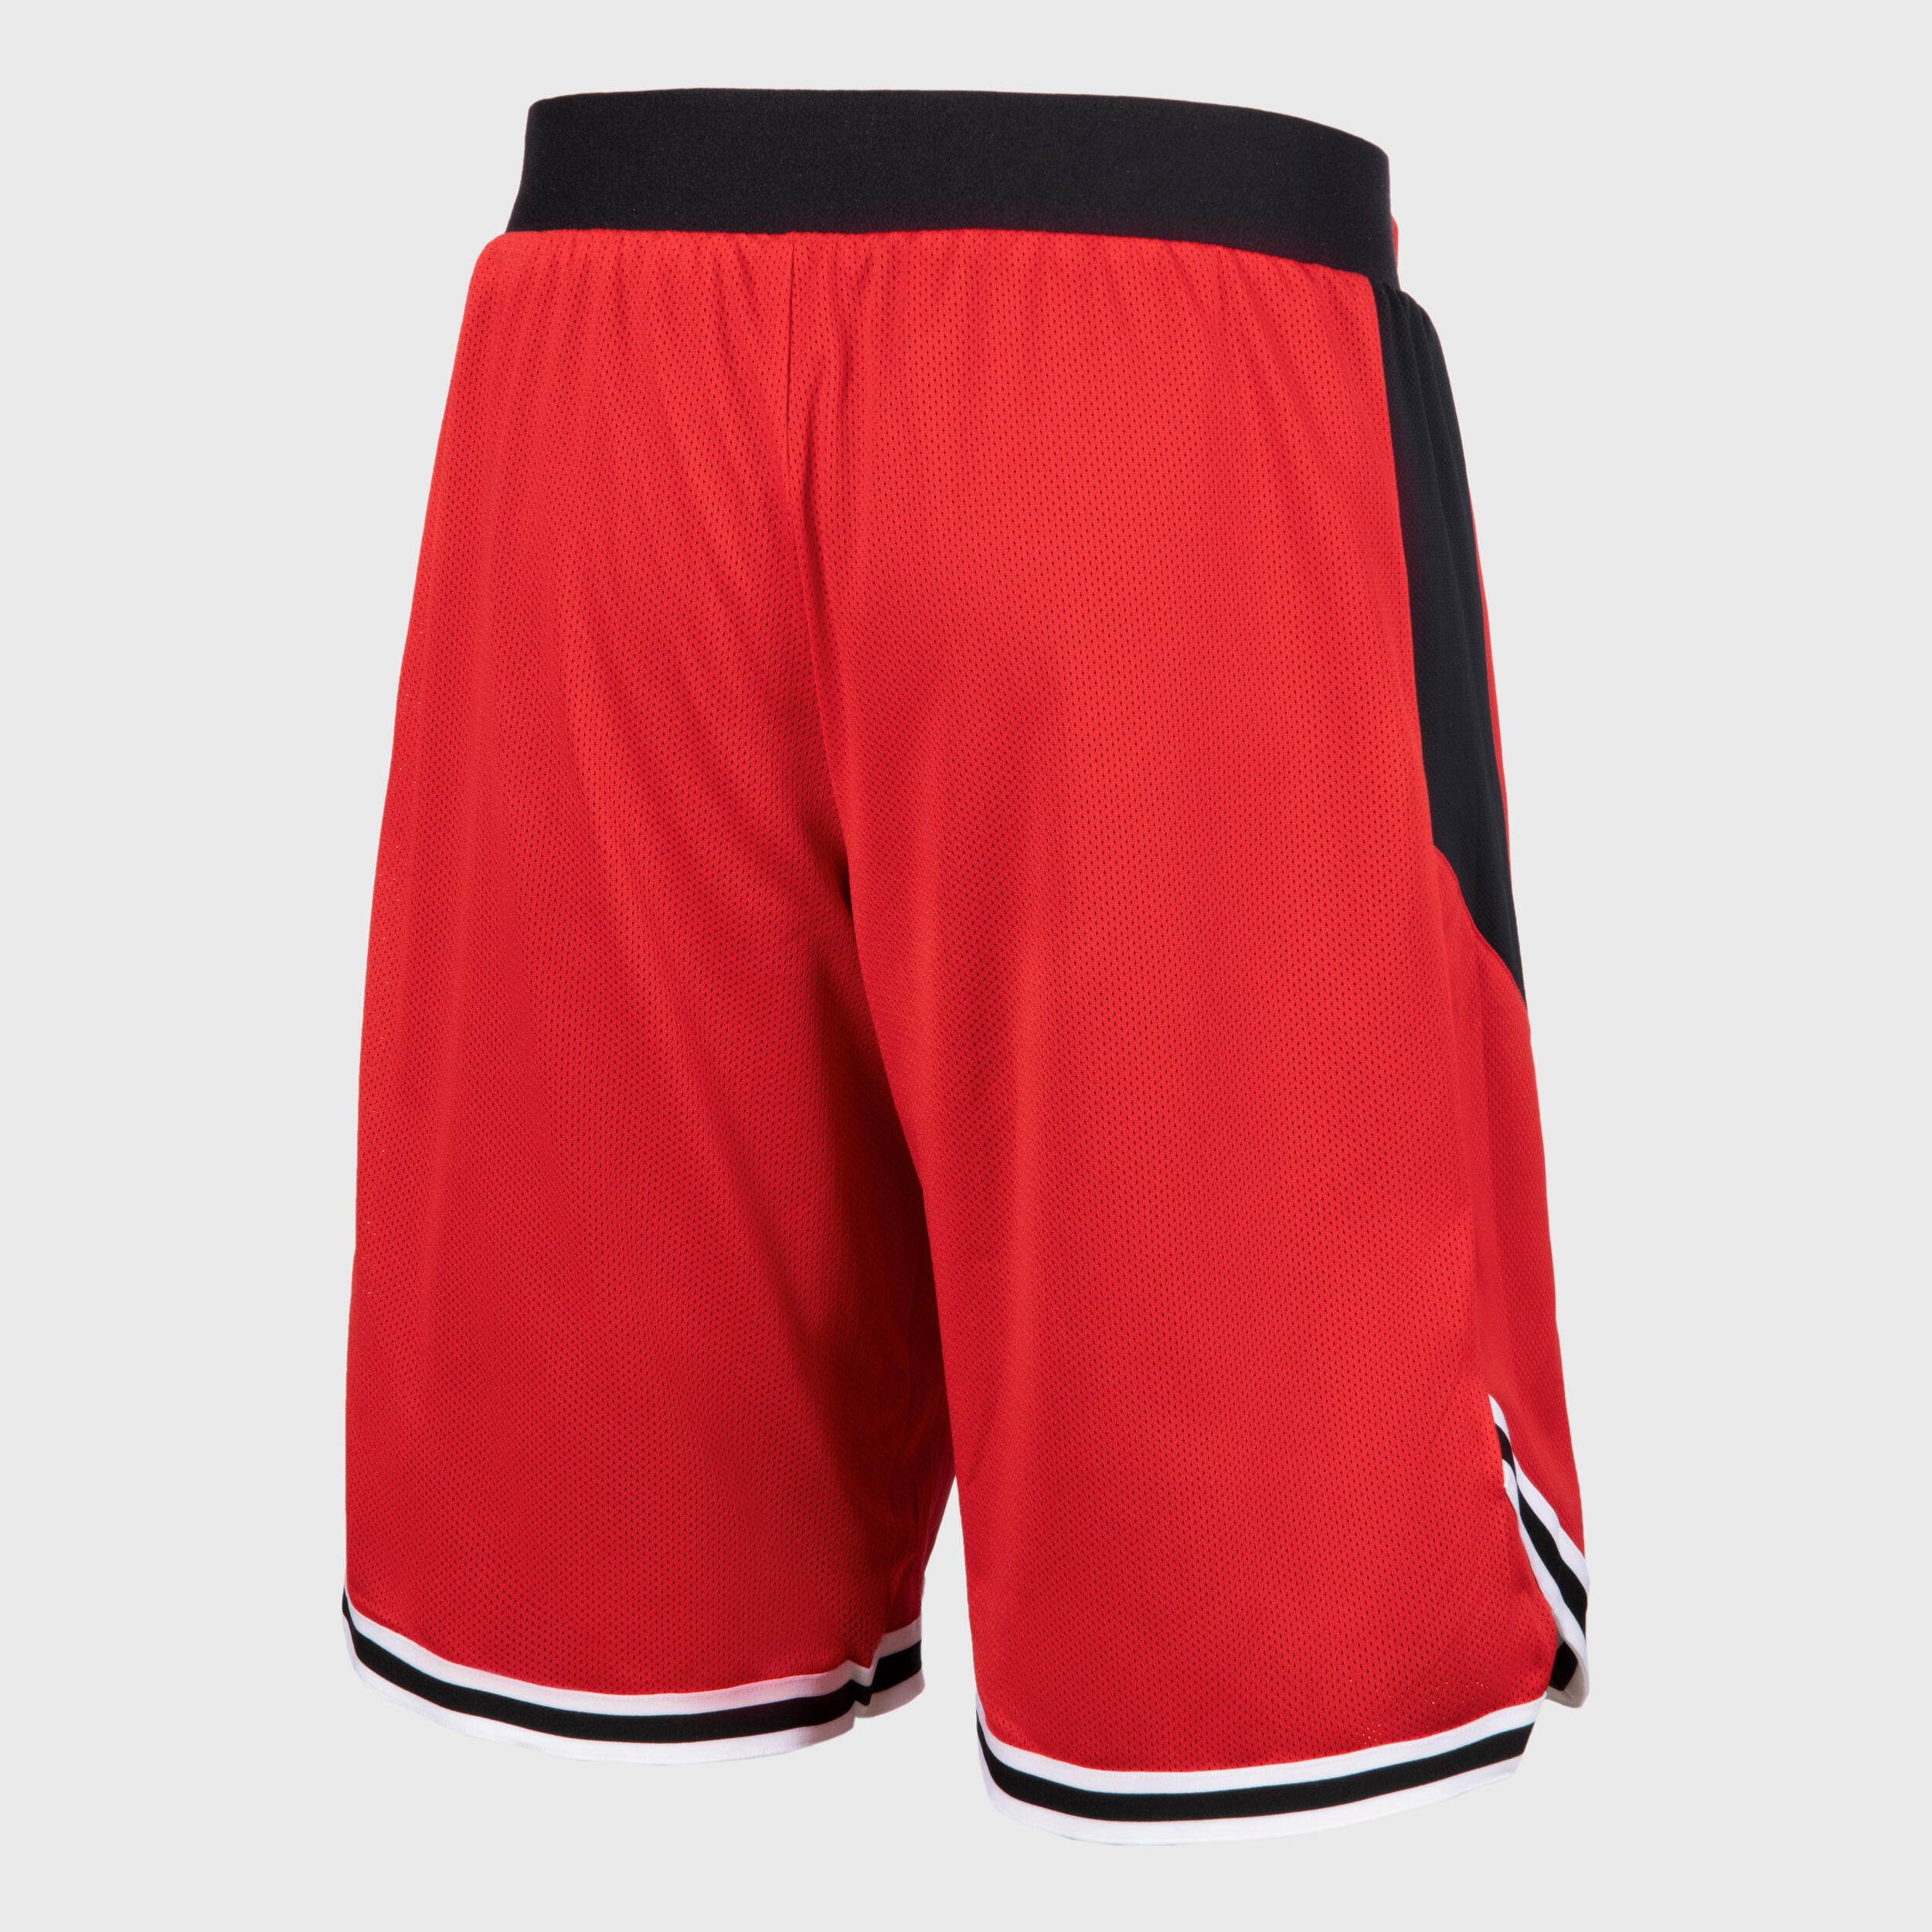 Men's/Women's Basketball Reversible Shorts SH500R - Black/Red 9/10